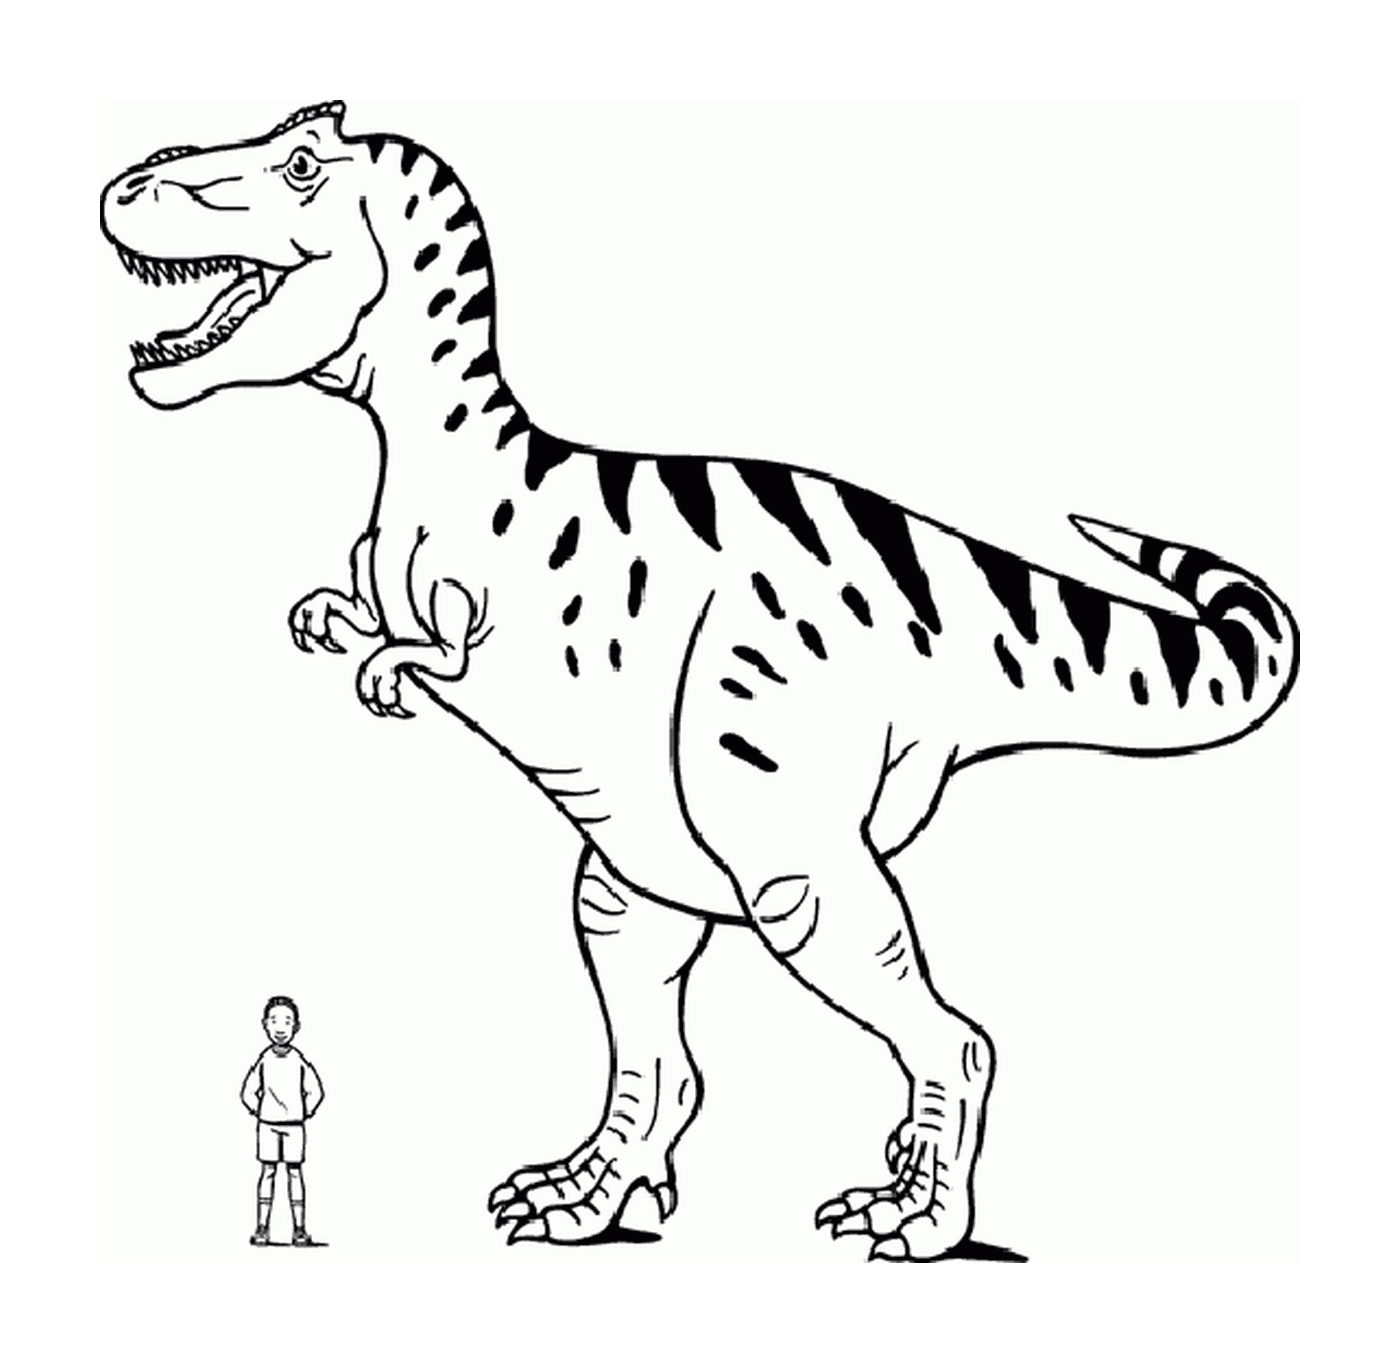   Un tyrannosaure debout à côté d'une personne 